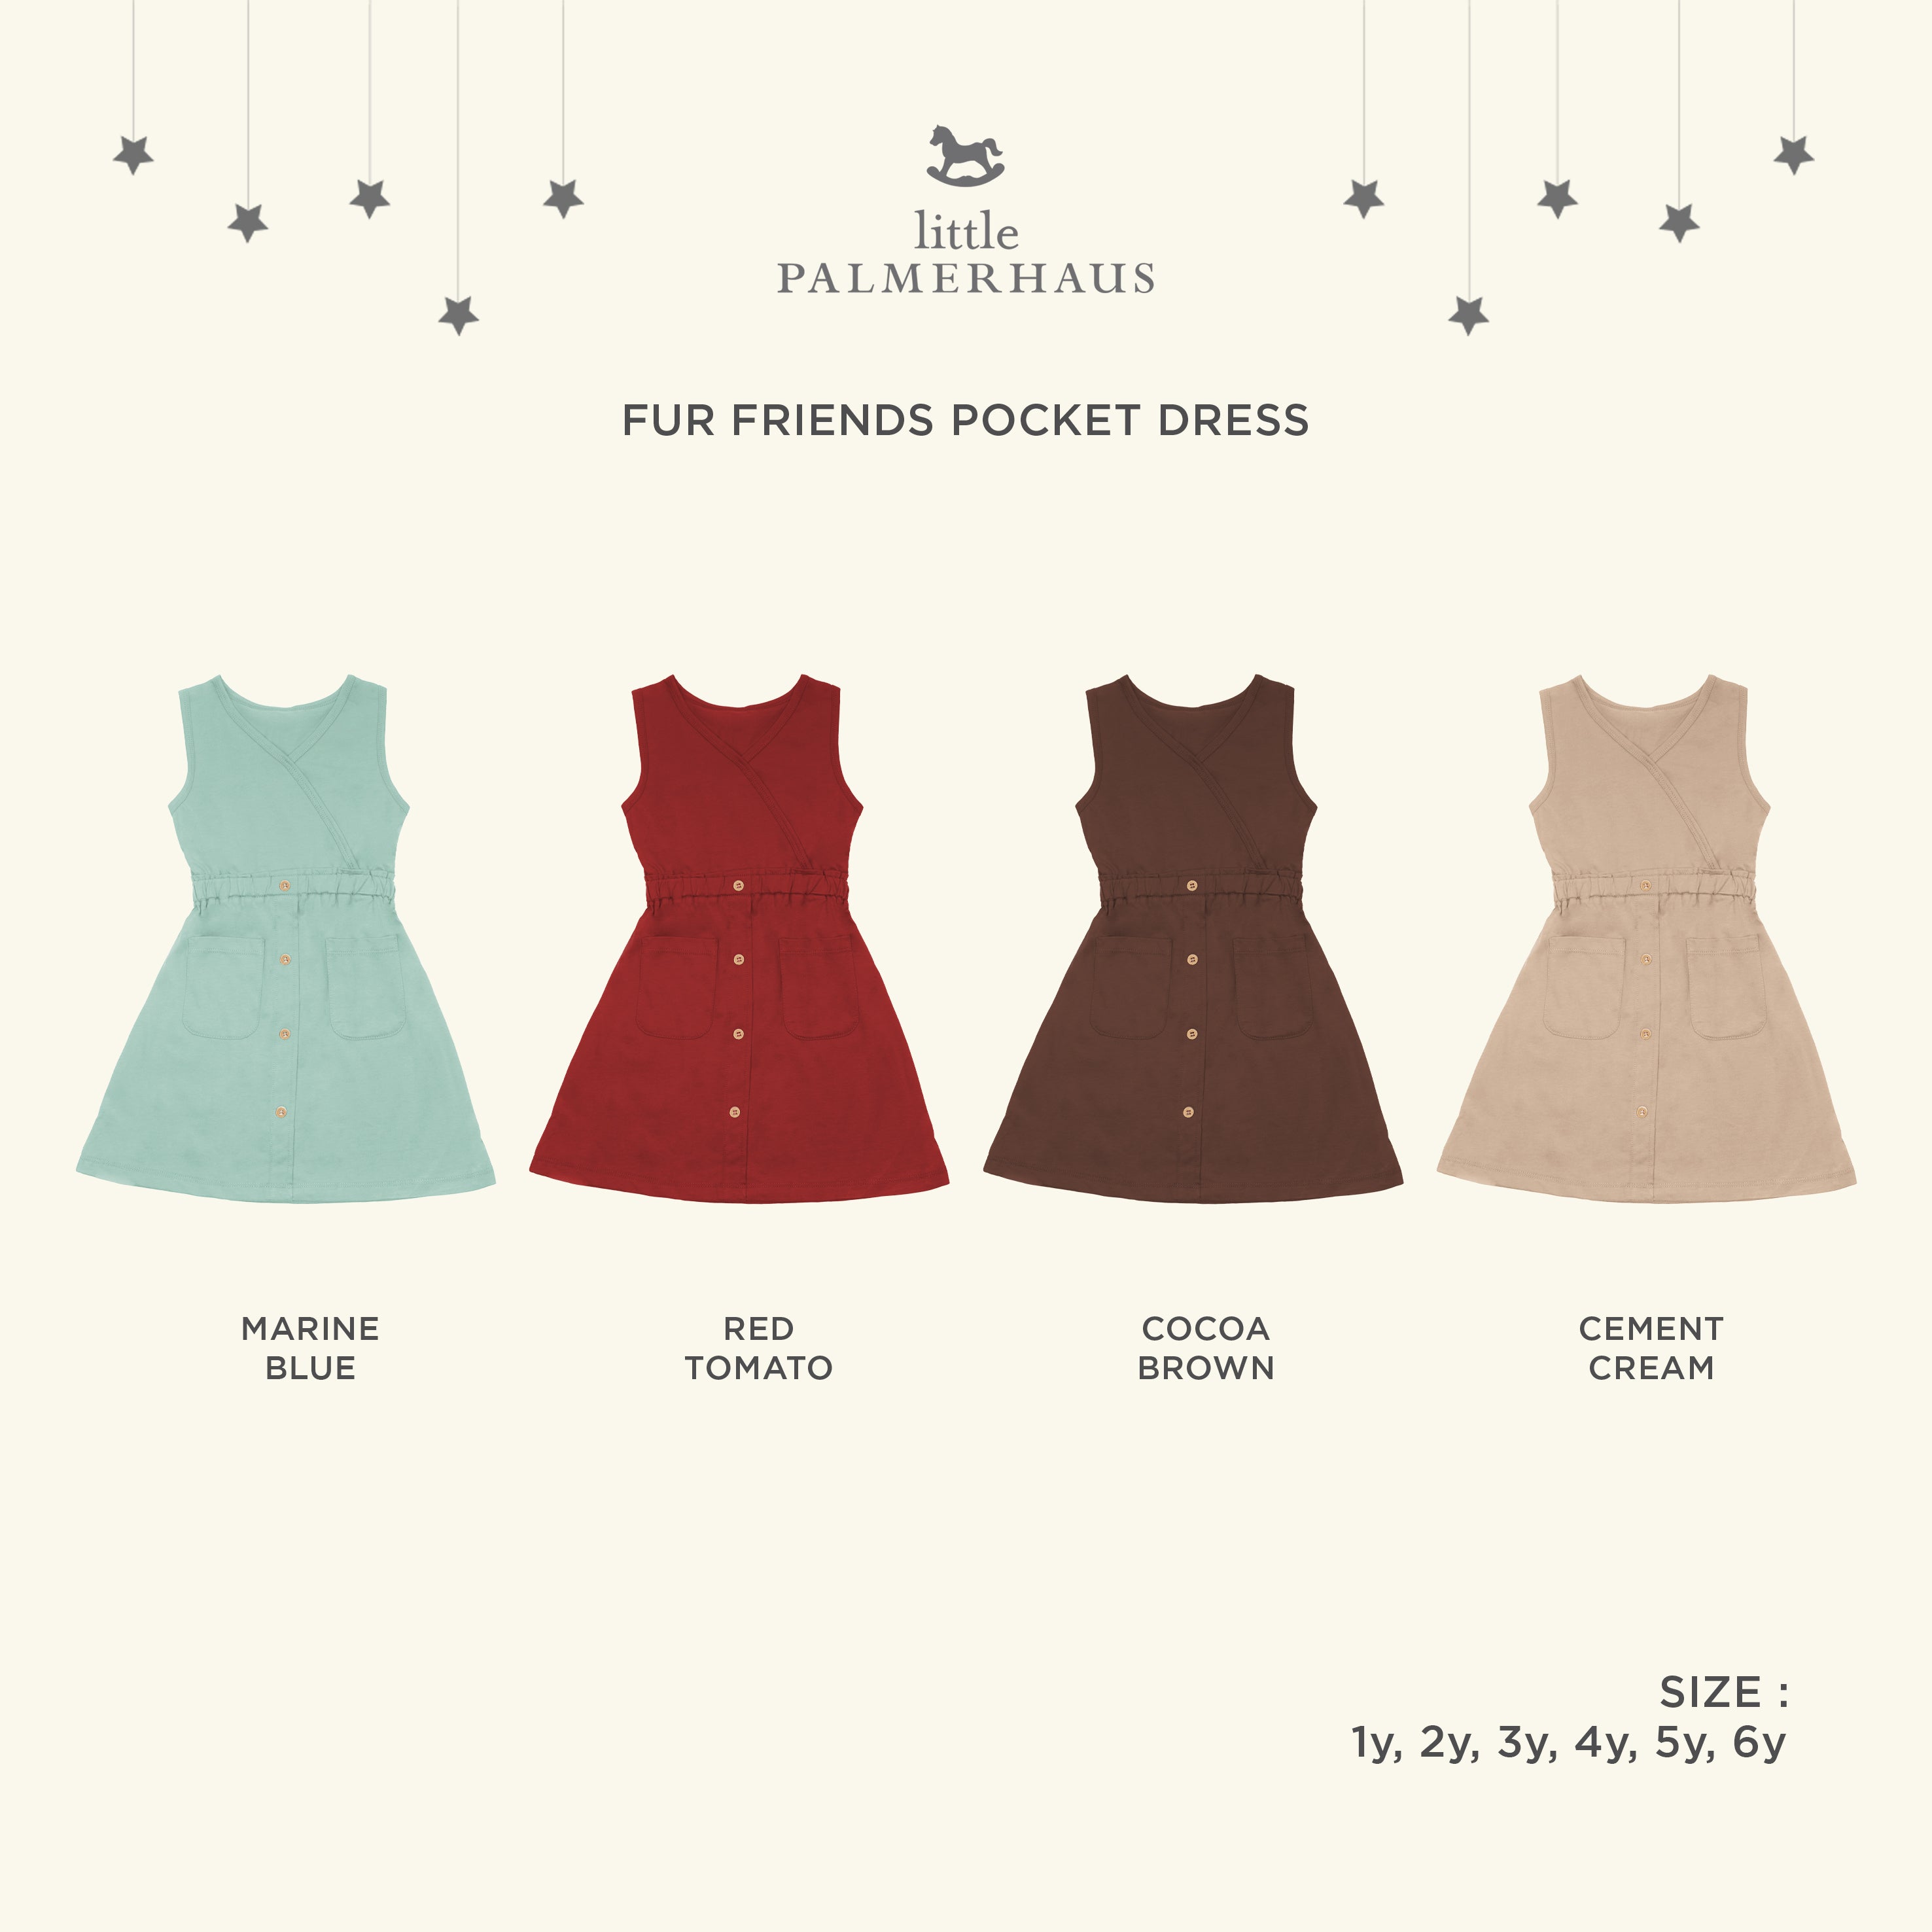 Fur Friends Pocket Dress